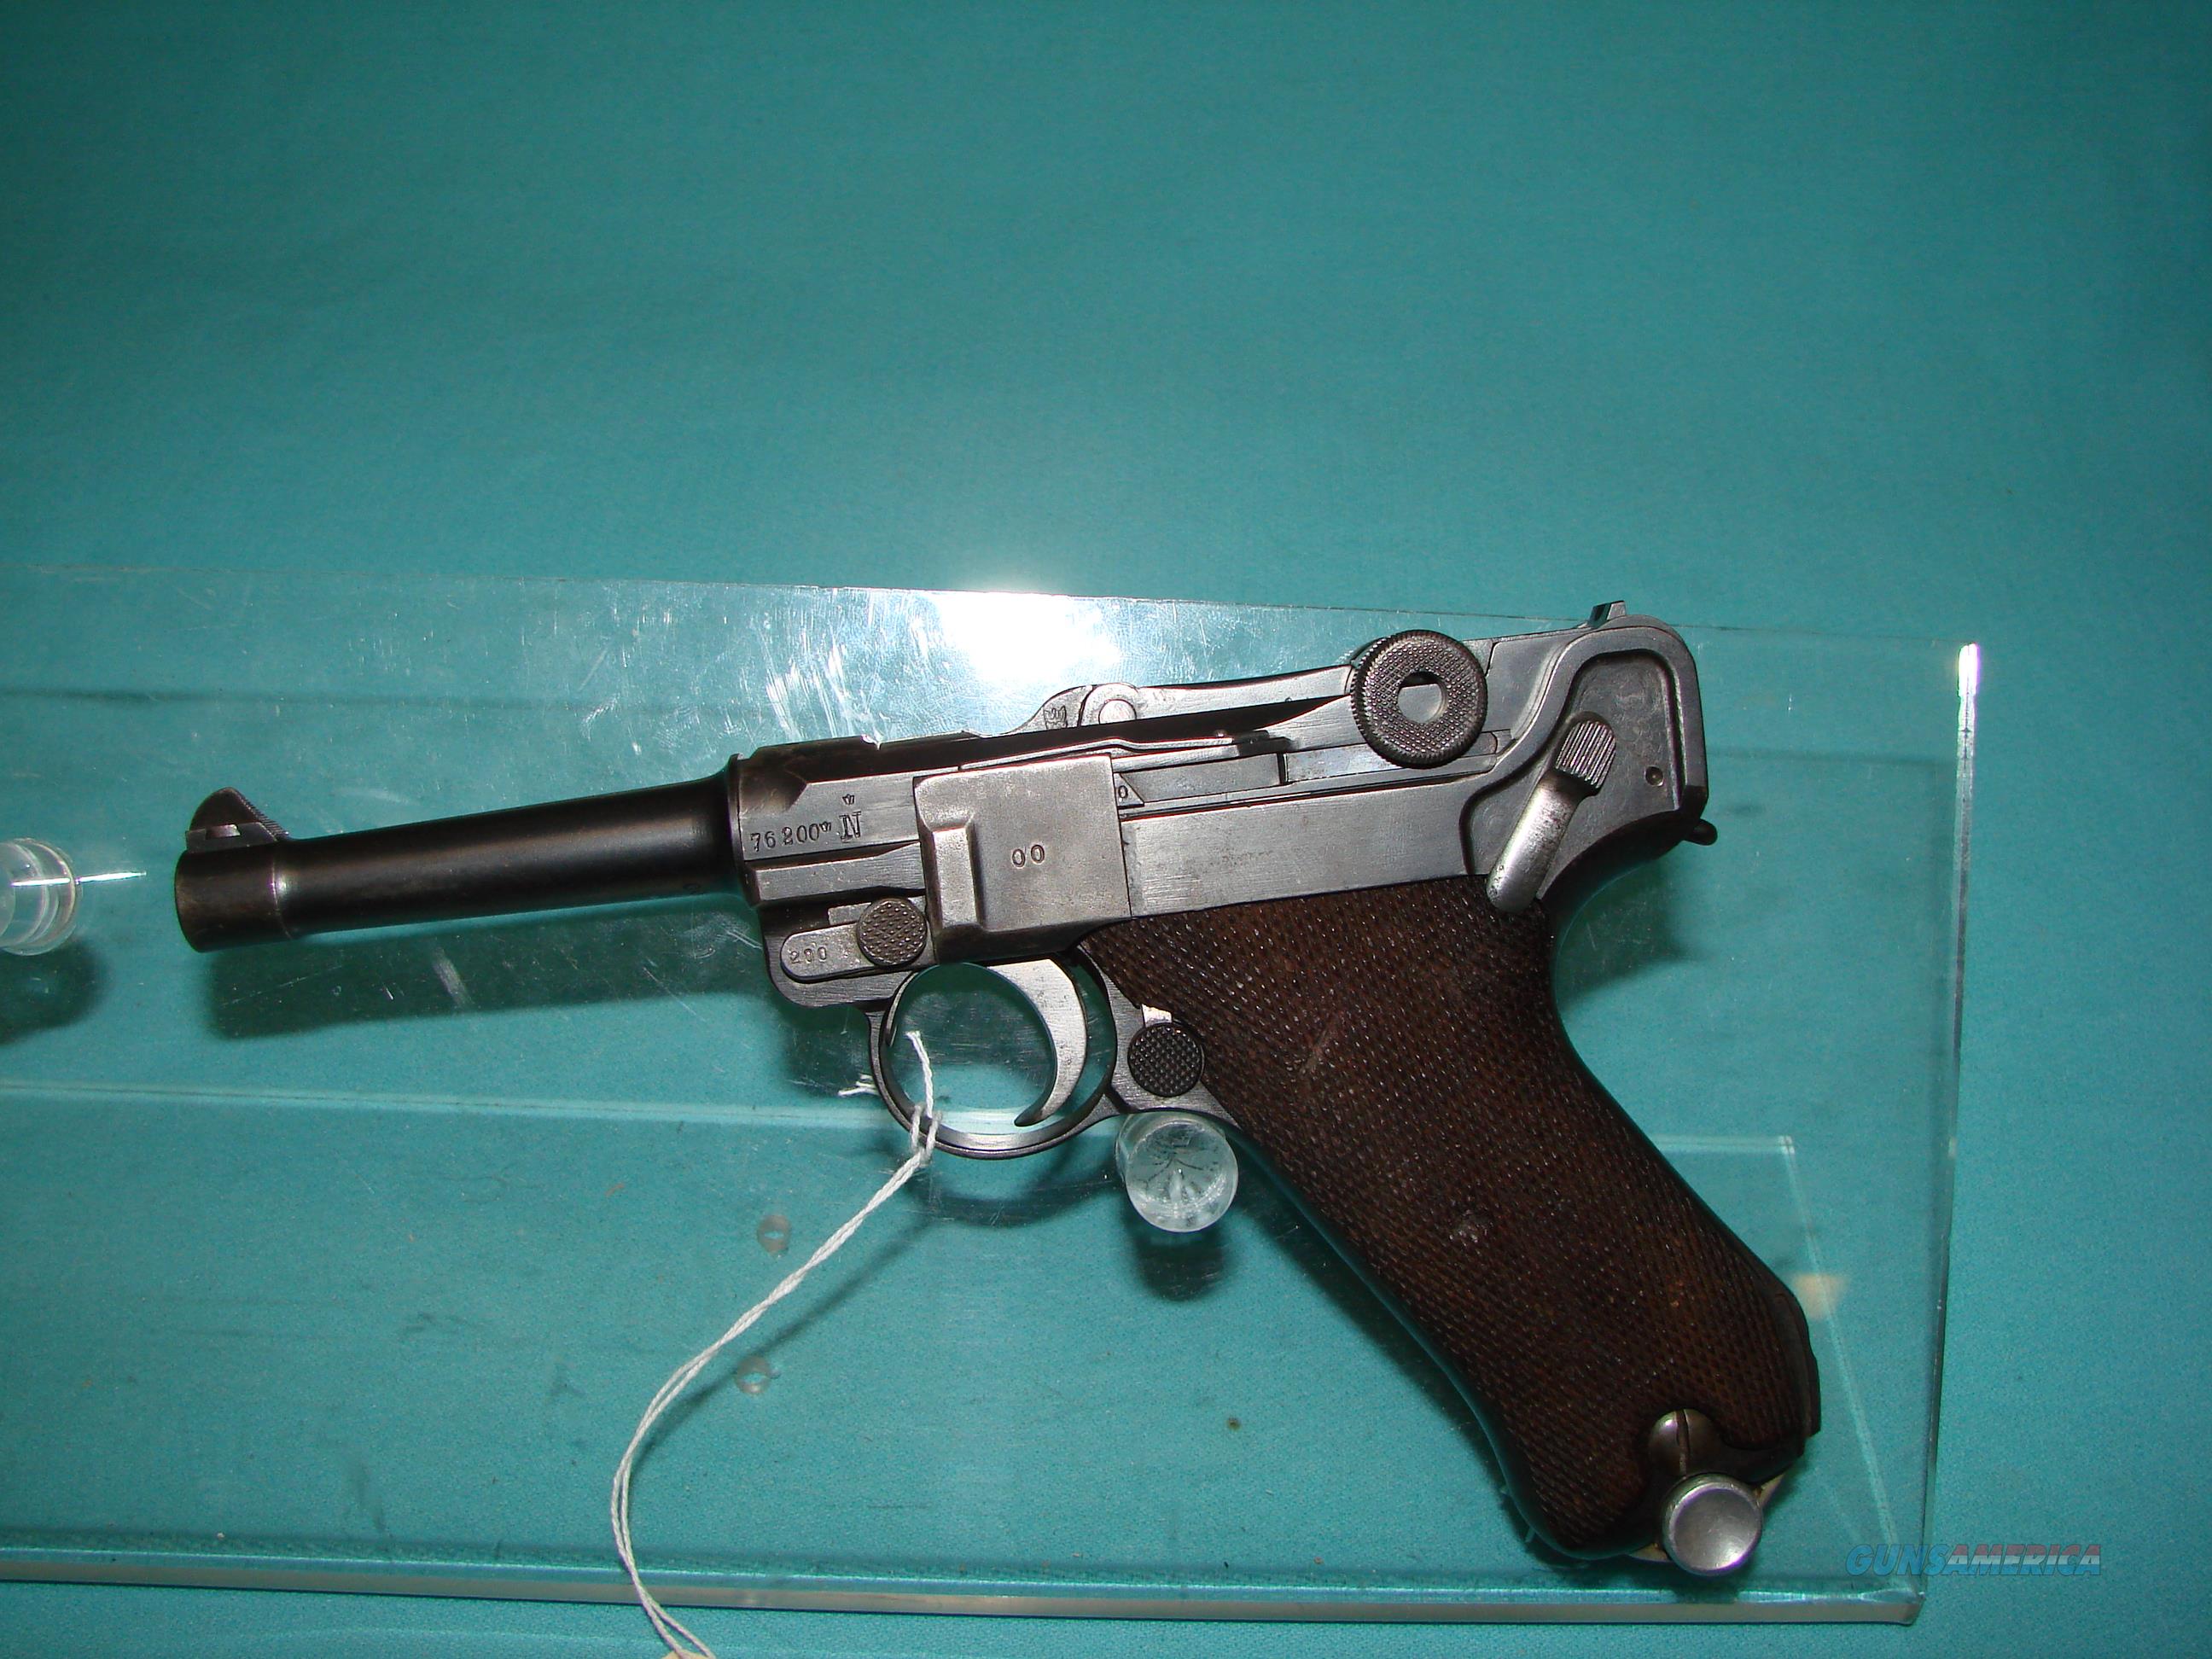 German Police Luger 9mm Guns > Pistols > Luger Pistols. 